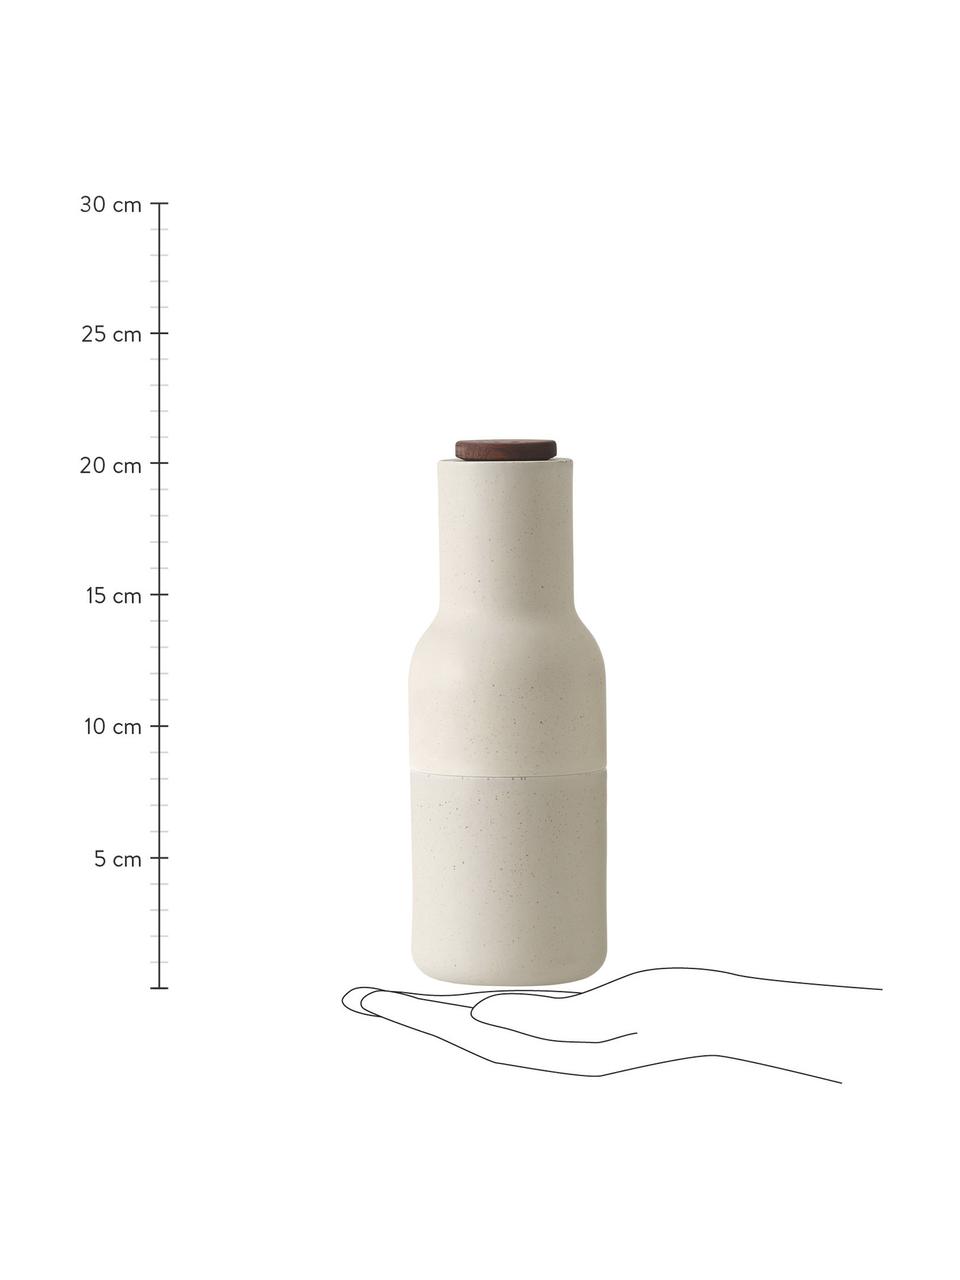 Designer keramische zout- en pepermolen Bottle Grinder met walnoothouten deksel, Frame: keramiek, Deksel: walnootkleurig, Grijs, wit, Ø 8 x H 21 cm